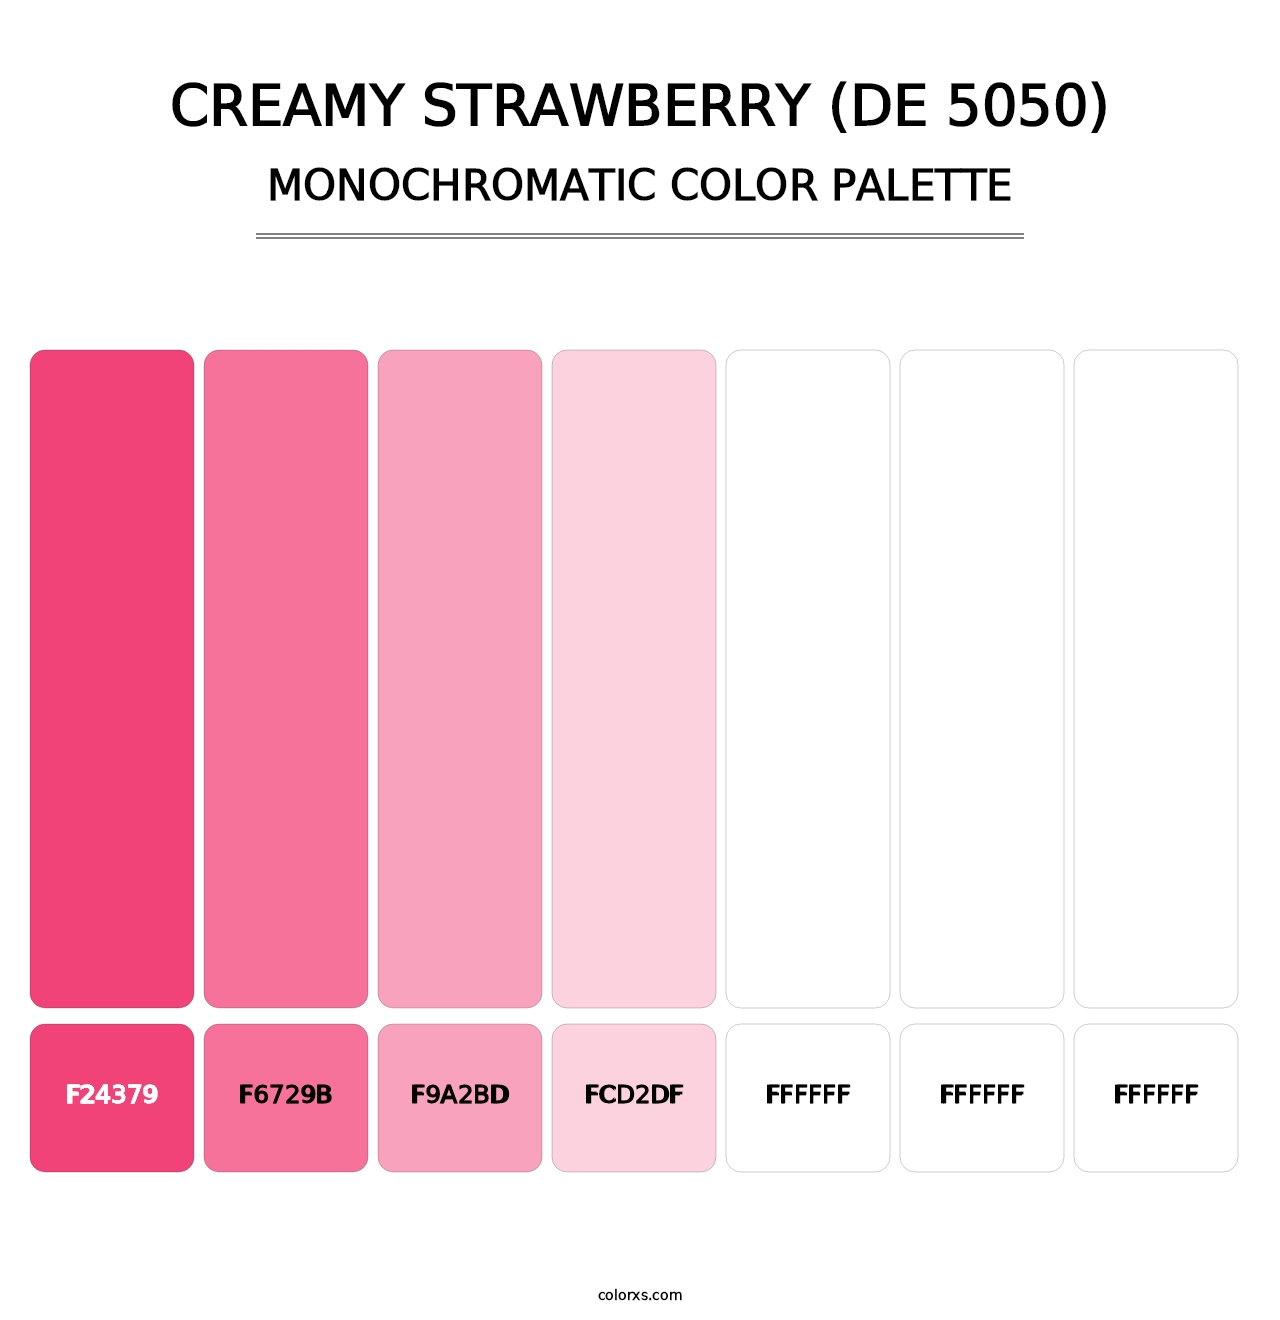 Creamy Strawberry (DE 5050) - Monochromatic Color Palette